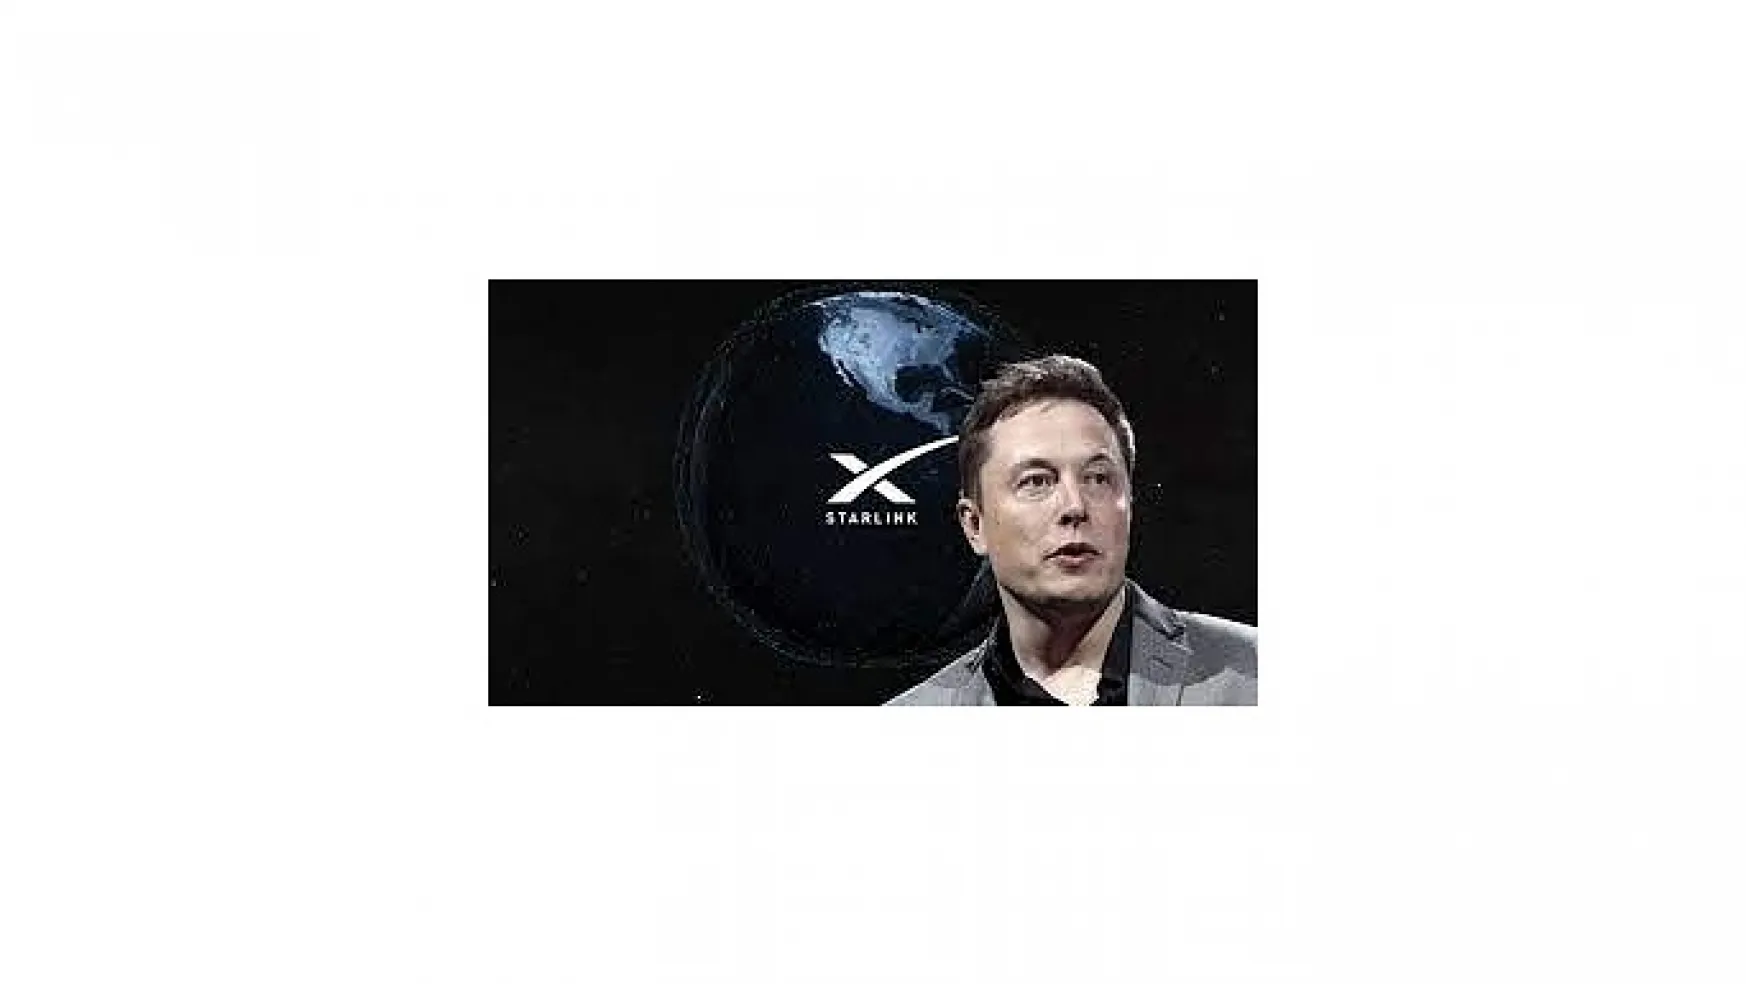 Son dakika: Musk'tan büyük müjde&nbspGazze'ye internet için SpaceX destek sözü